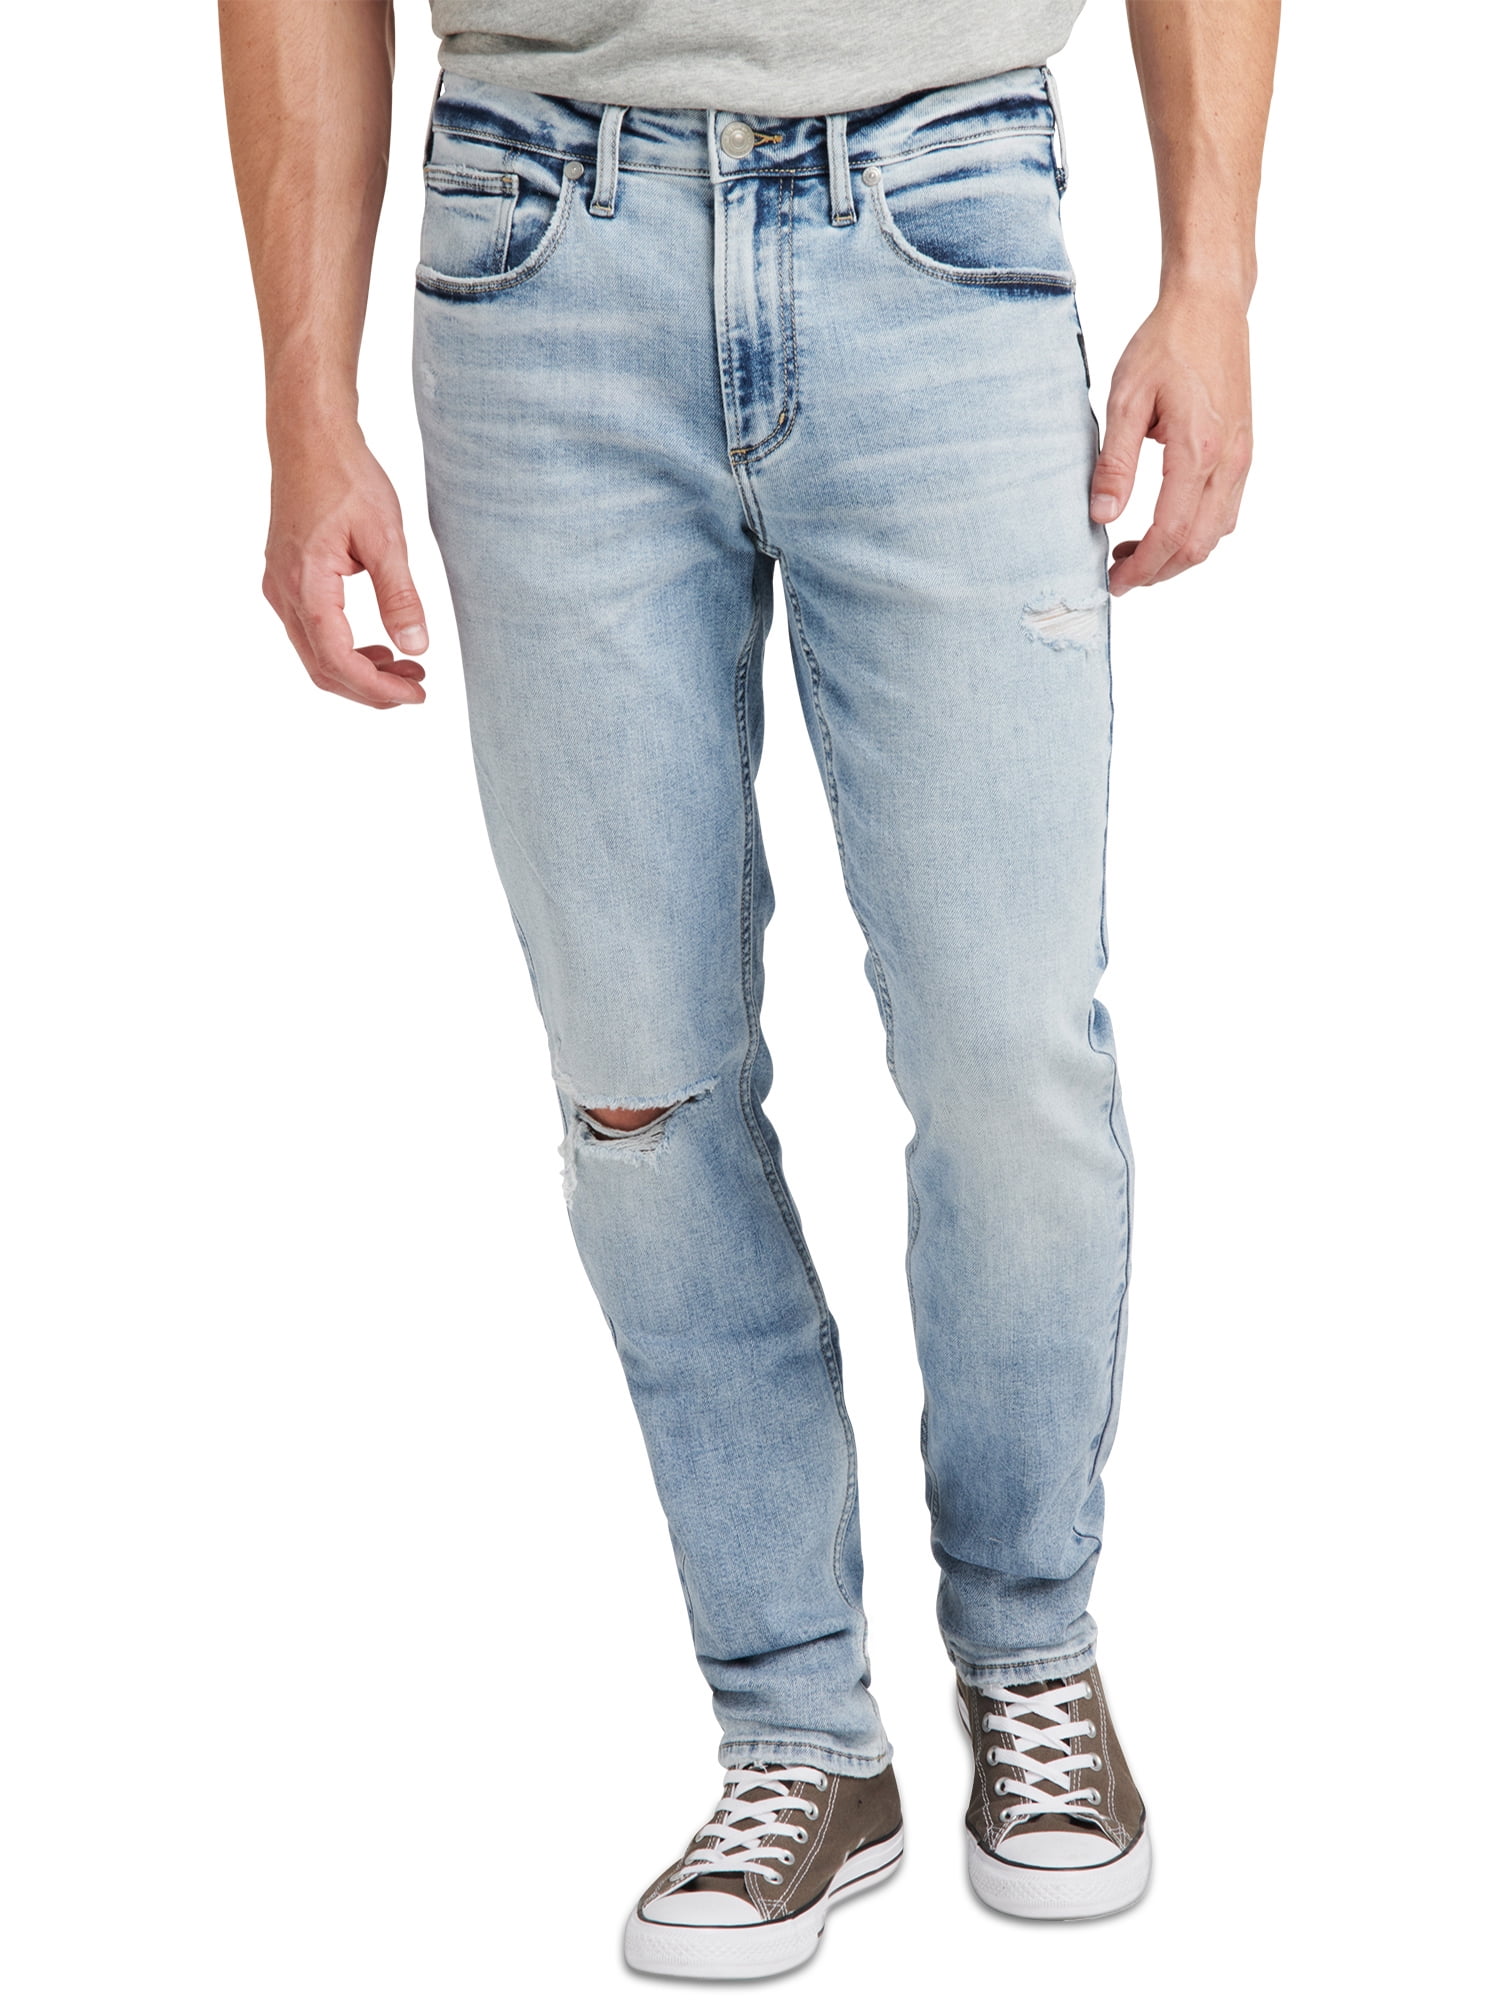 Perceptie kopen rekenkundig Silver Jeans Co. Men's Kenaston Slim Fit Slim Leg Jeans, Waist sizes 30-42  - Walmart.com